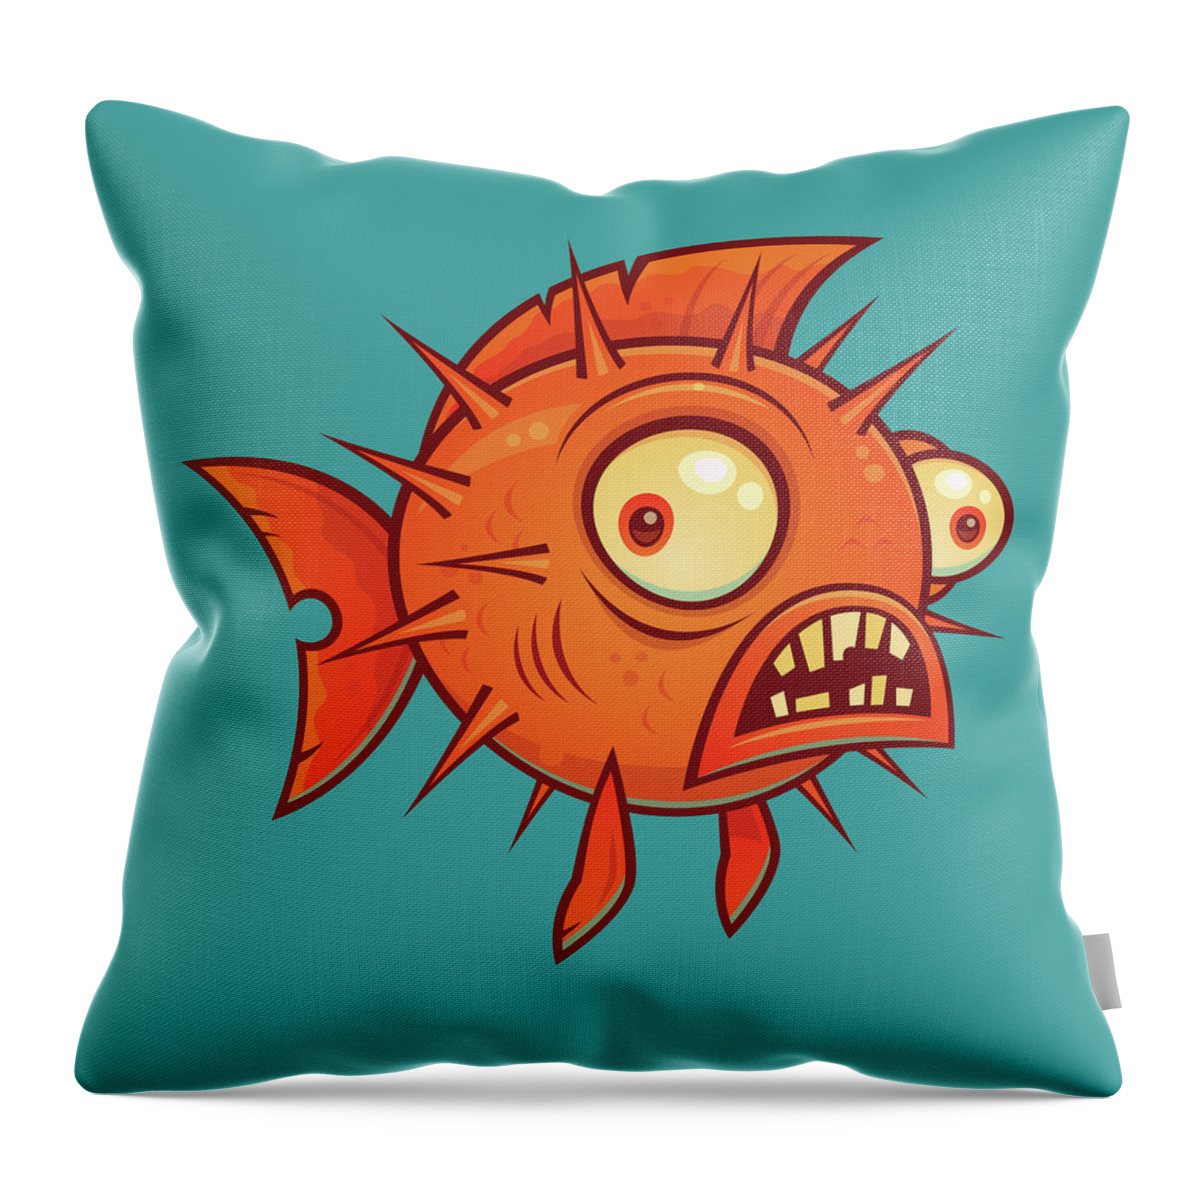 Pufferfish Throw Pillow featuring the digital art Pufferfish by John Schwegel